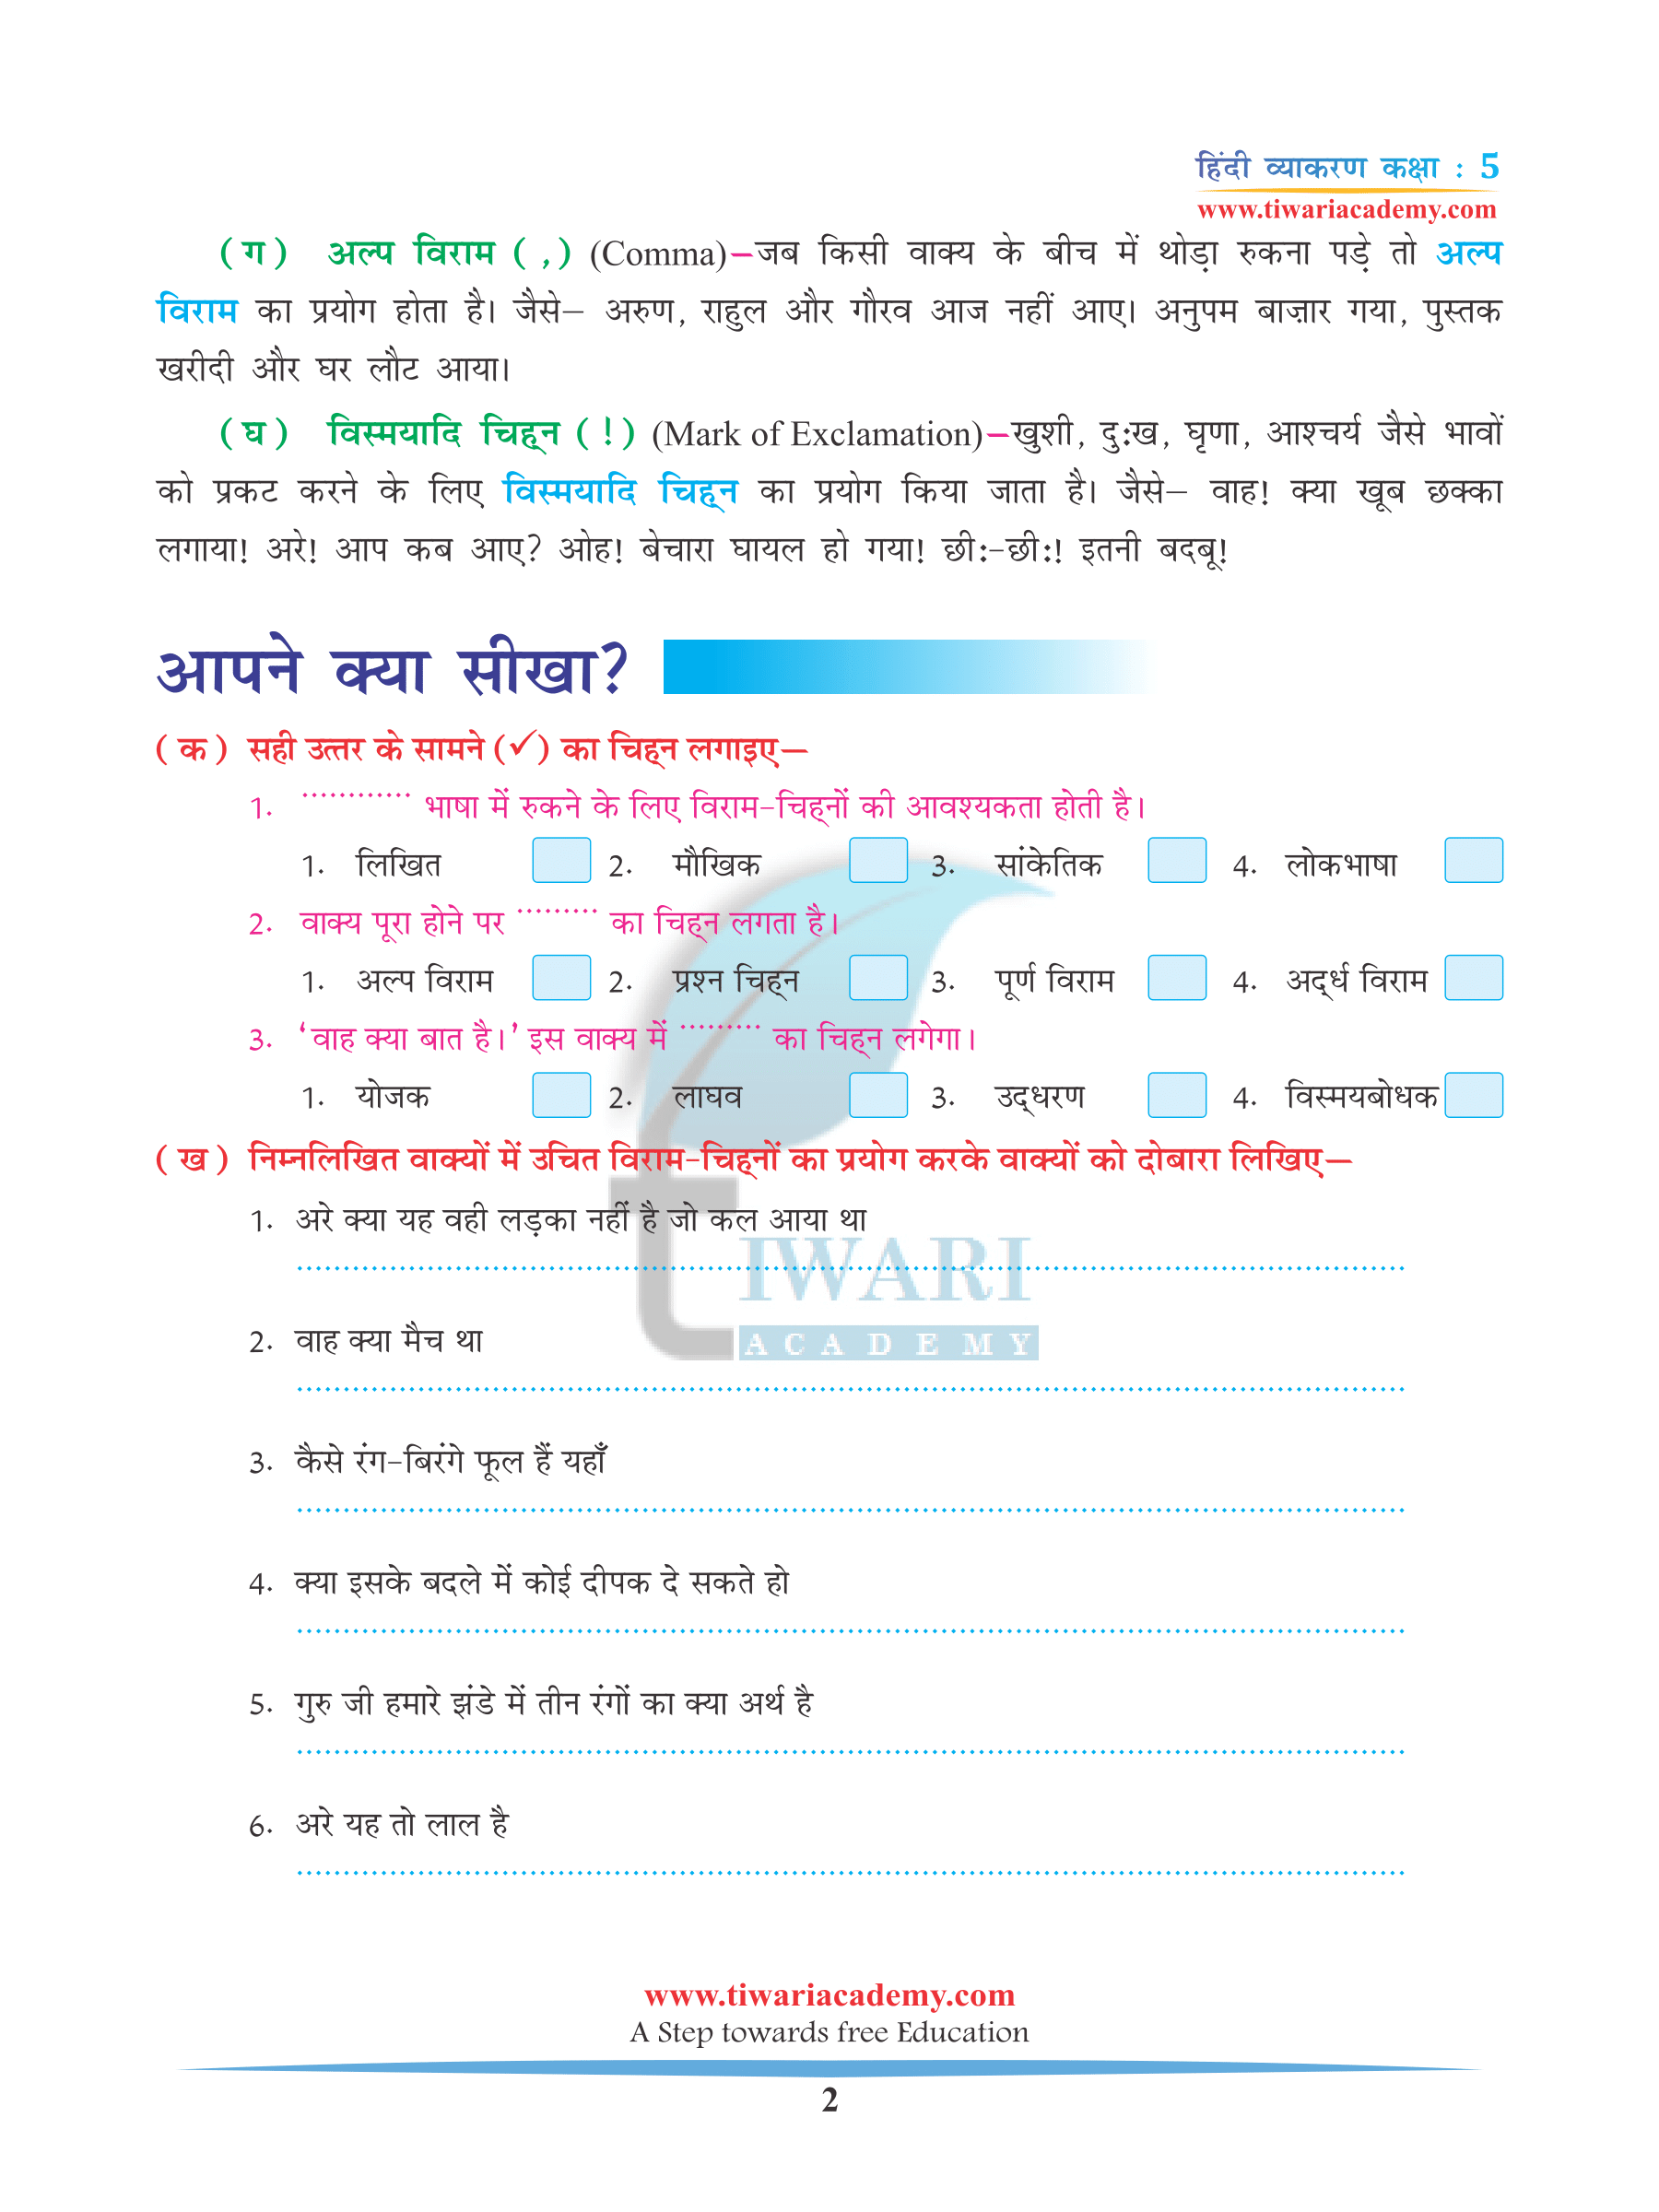 CBSE NCERT Solutions for Class 5 Hindi Grammar Chapter 17